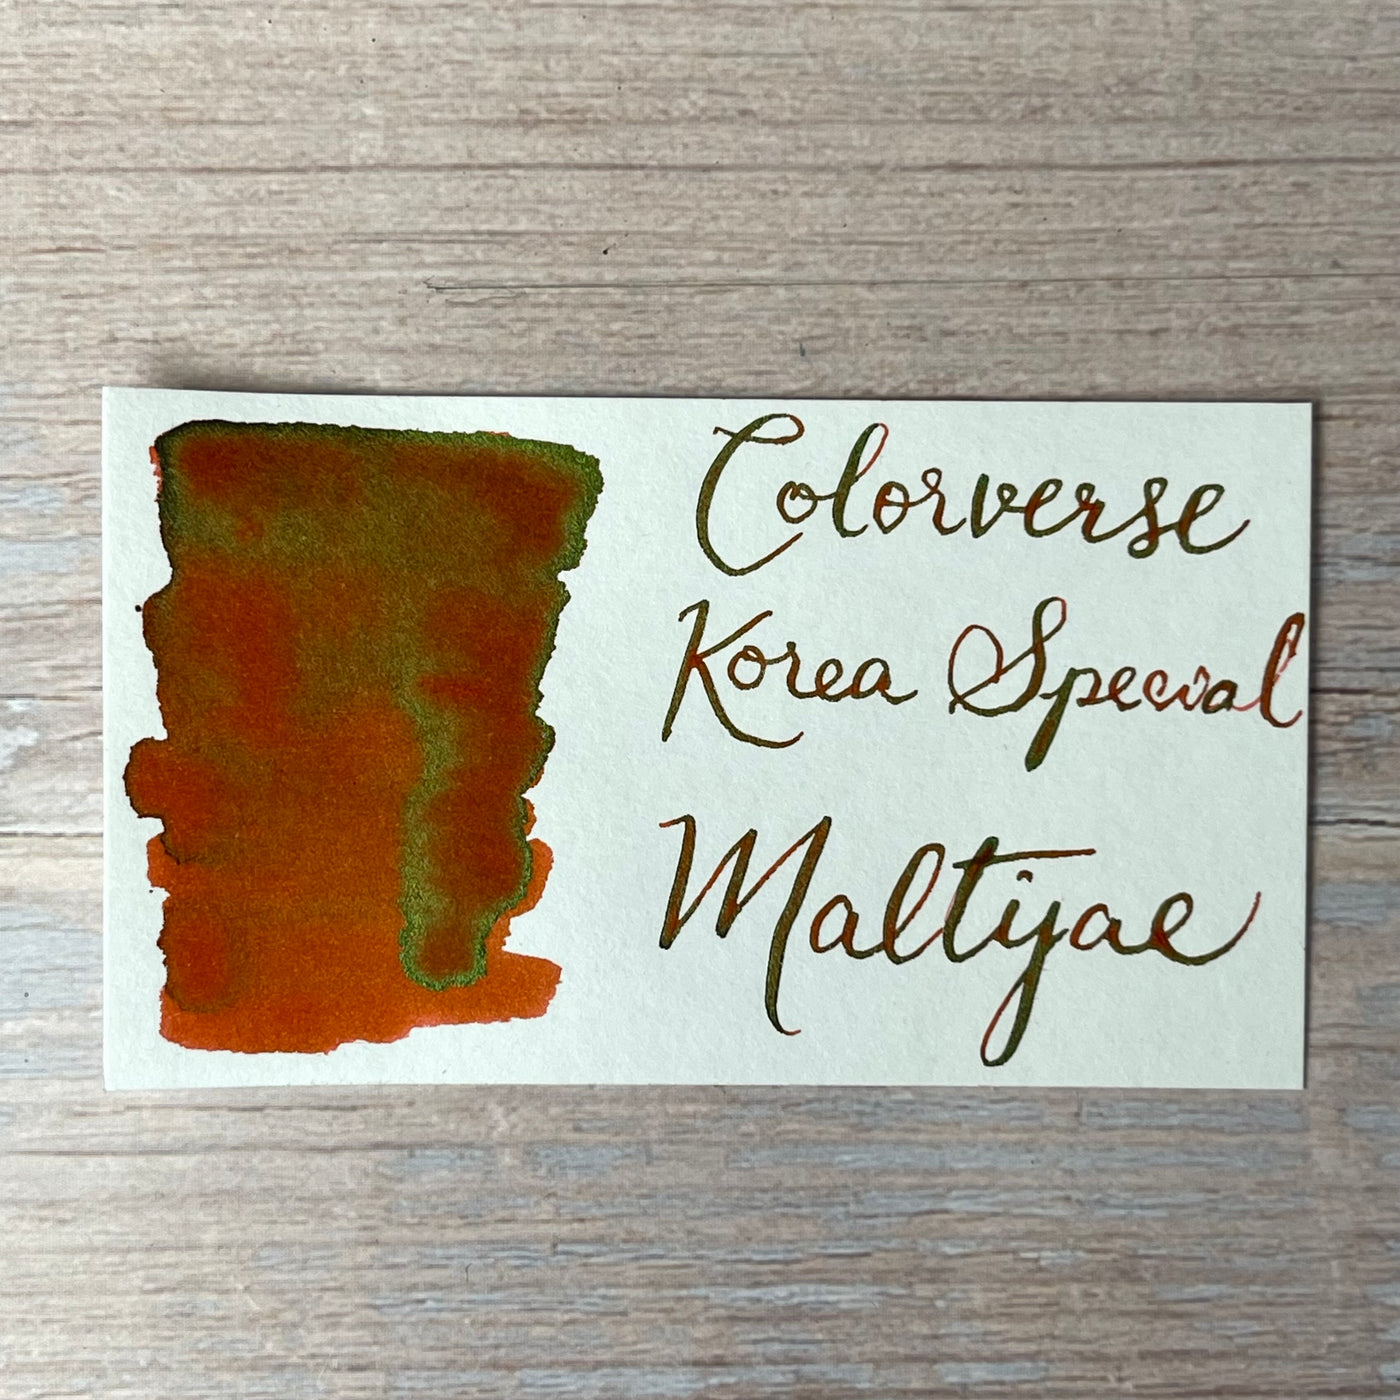 Colorverse 15ml Korea Special Bottled Ink - Maltijae